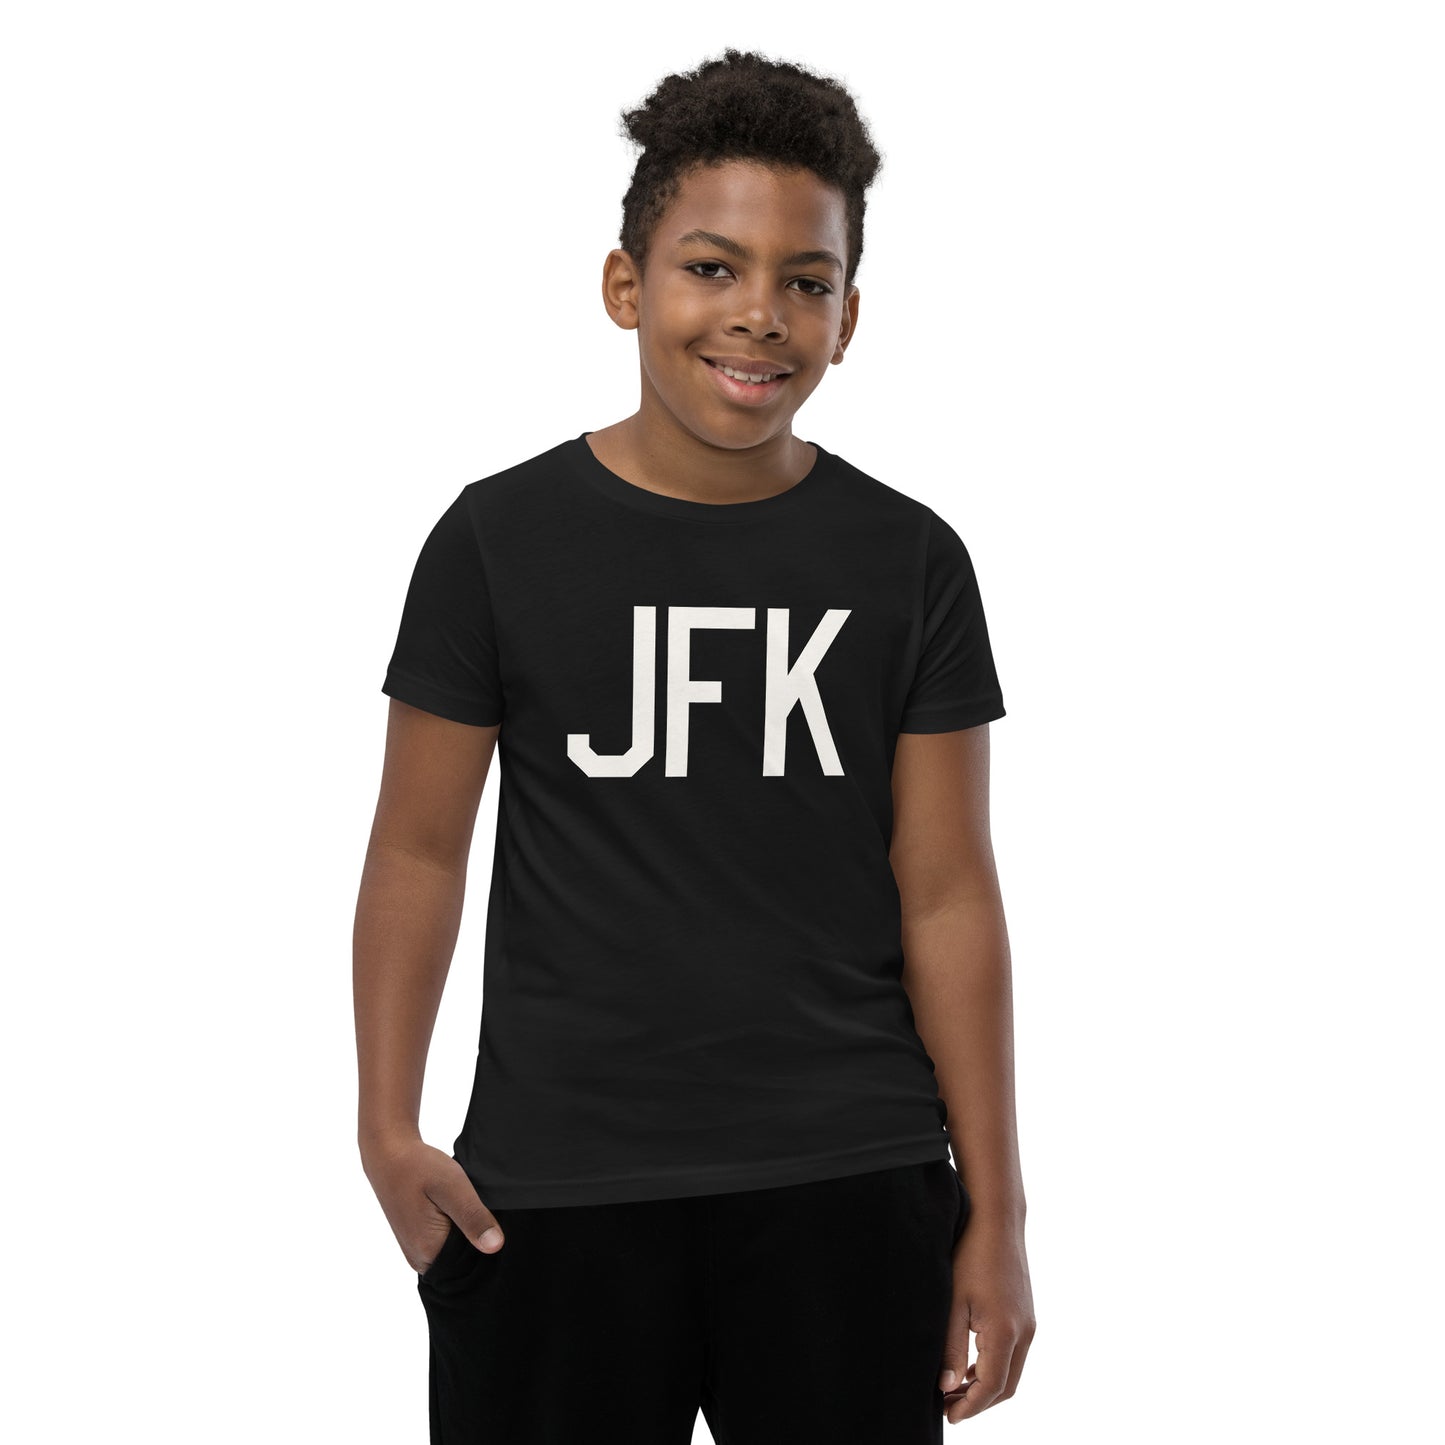 Kid's T-Shirt - White Graphic • JFK New York • YHM Designs - Image 06